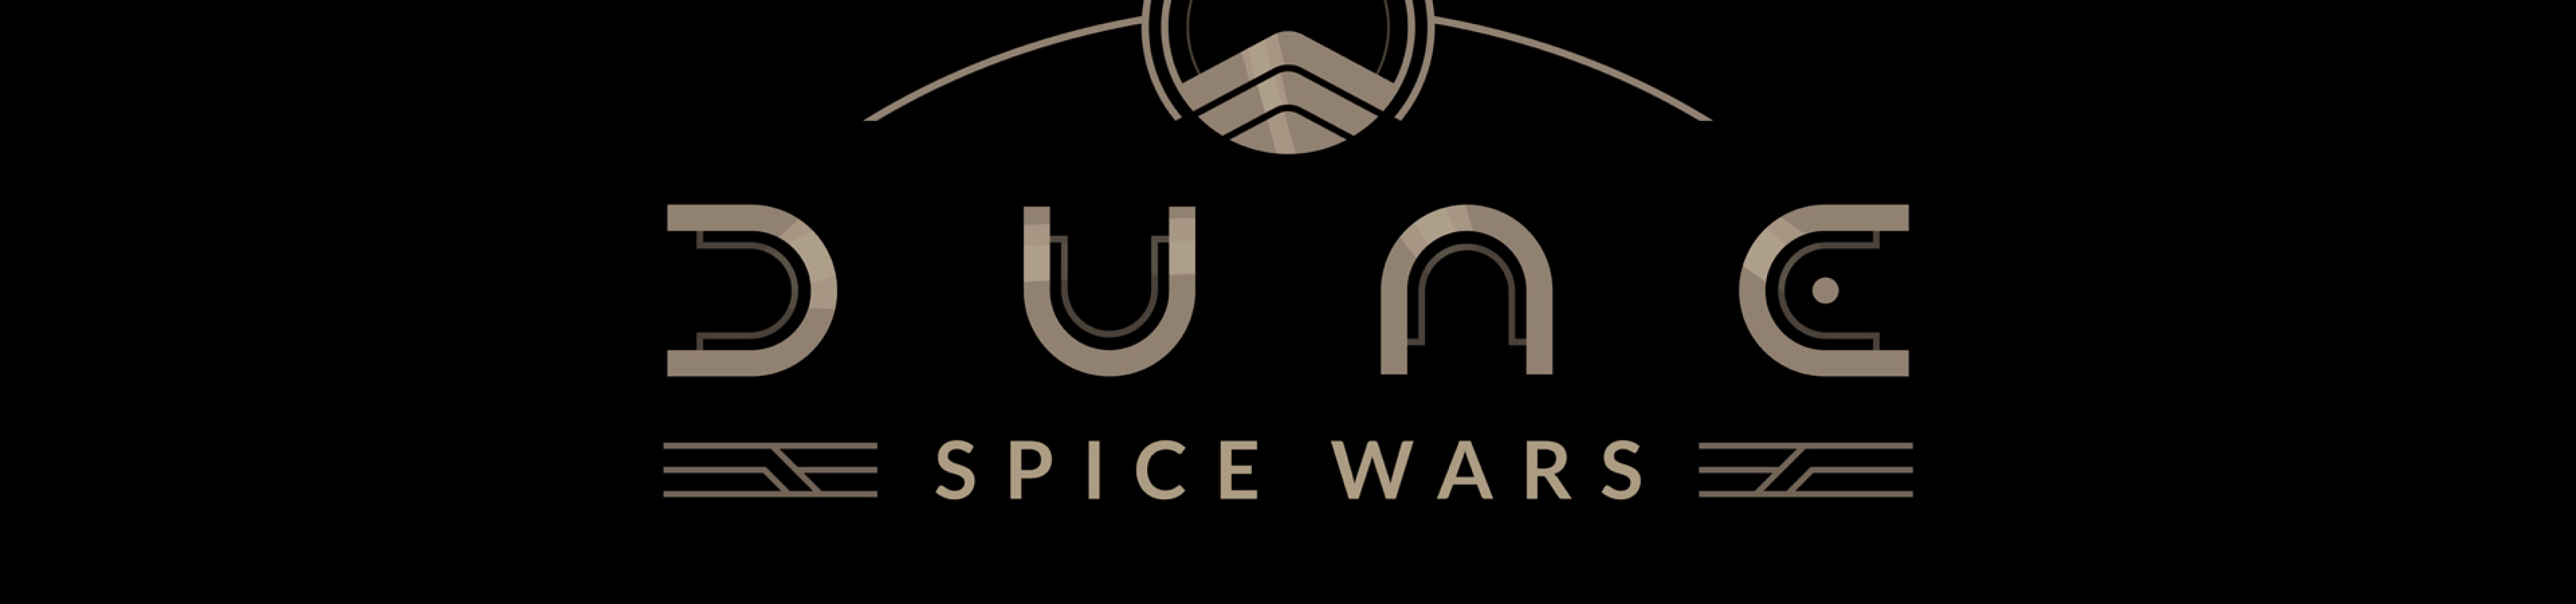 5120x1200 Resolution Dune Spice Wars Logo 5120x1200 Resolution ...